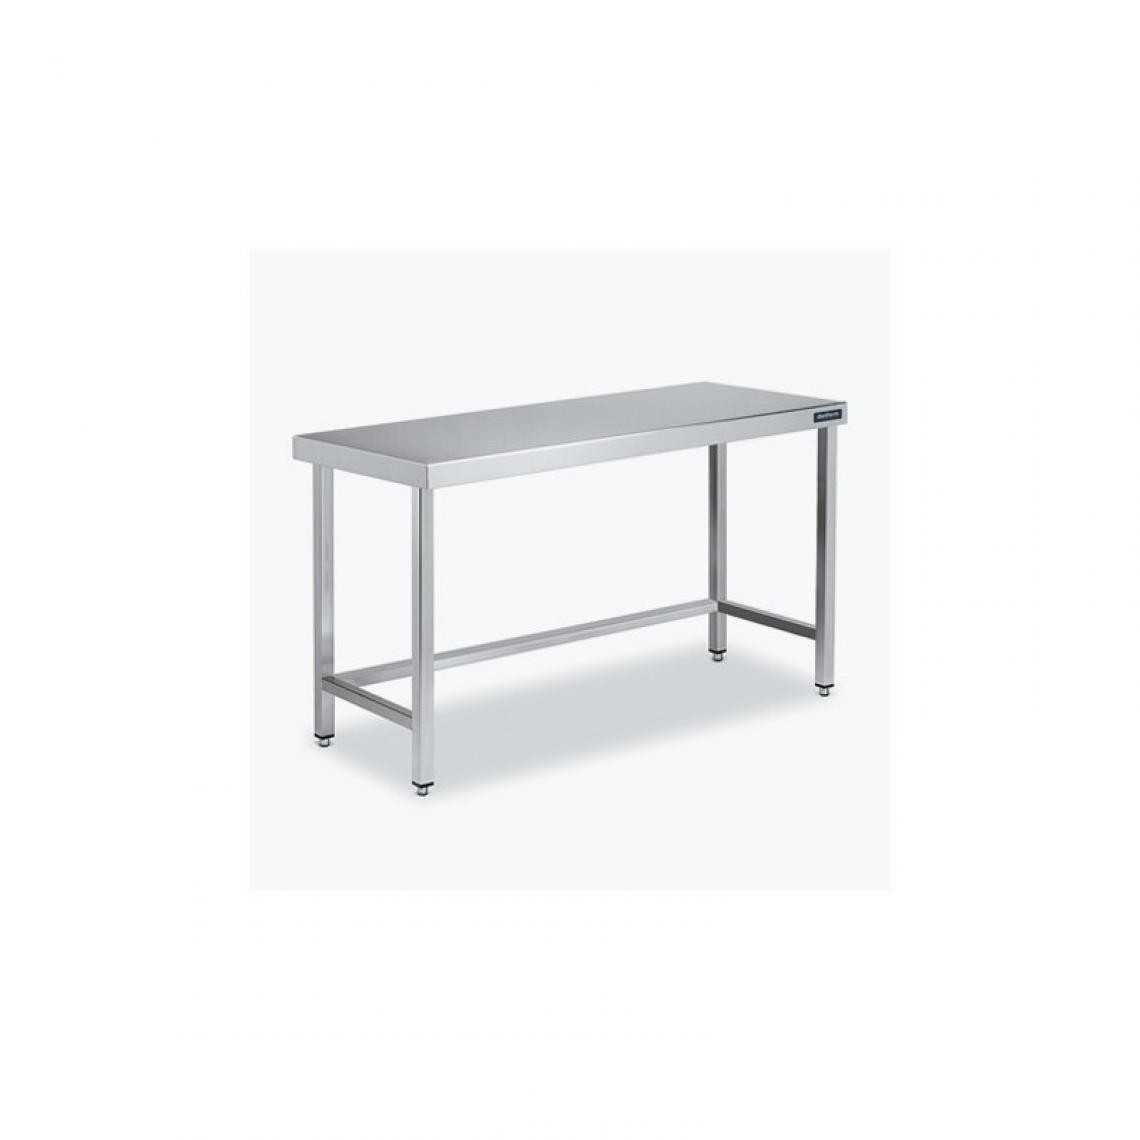 DISTFORM - Table Centrale 600x700 avec Renforts - Distform - Inox 18/101900x700x850mm - Tables à manger